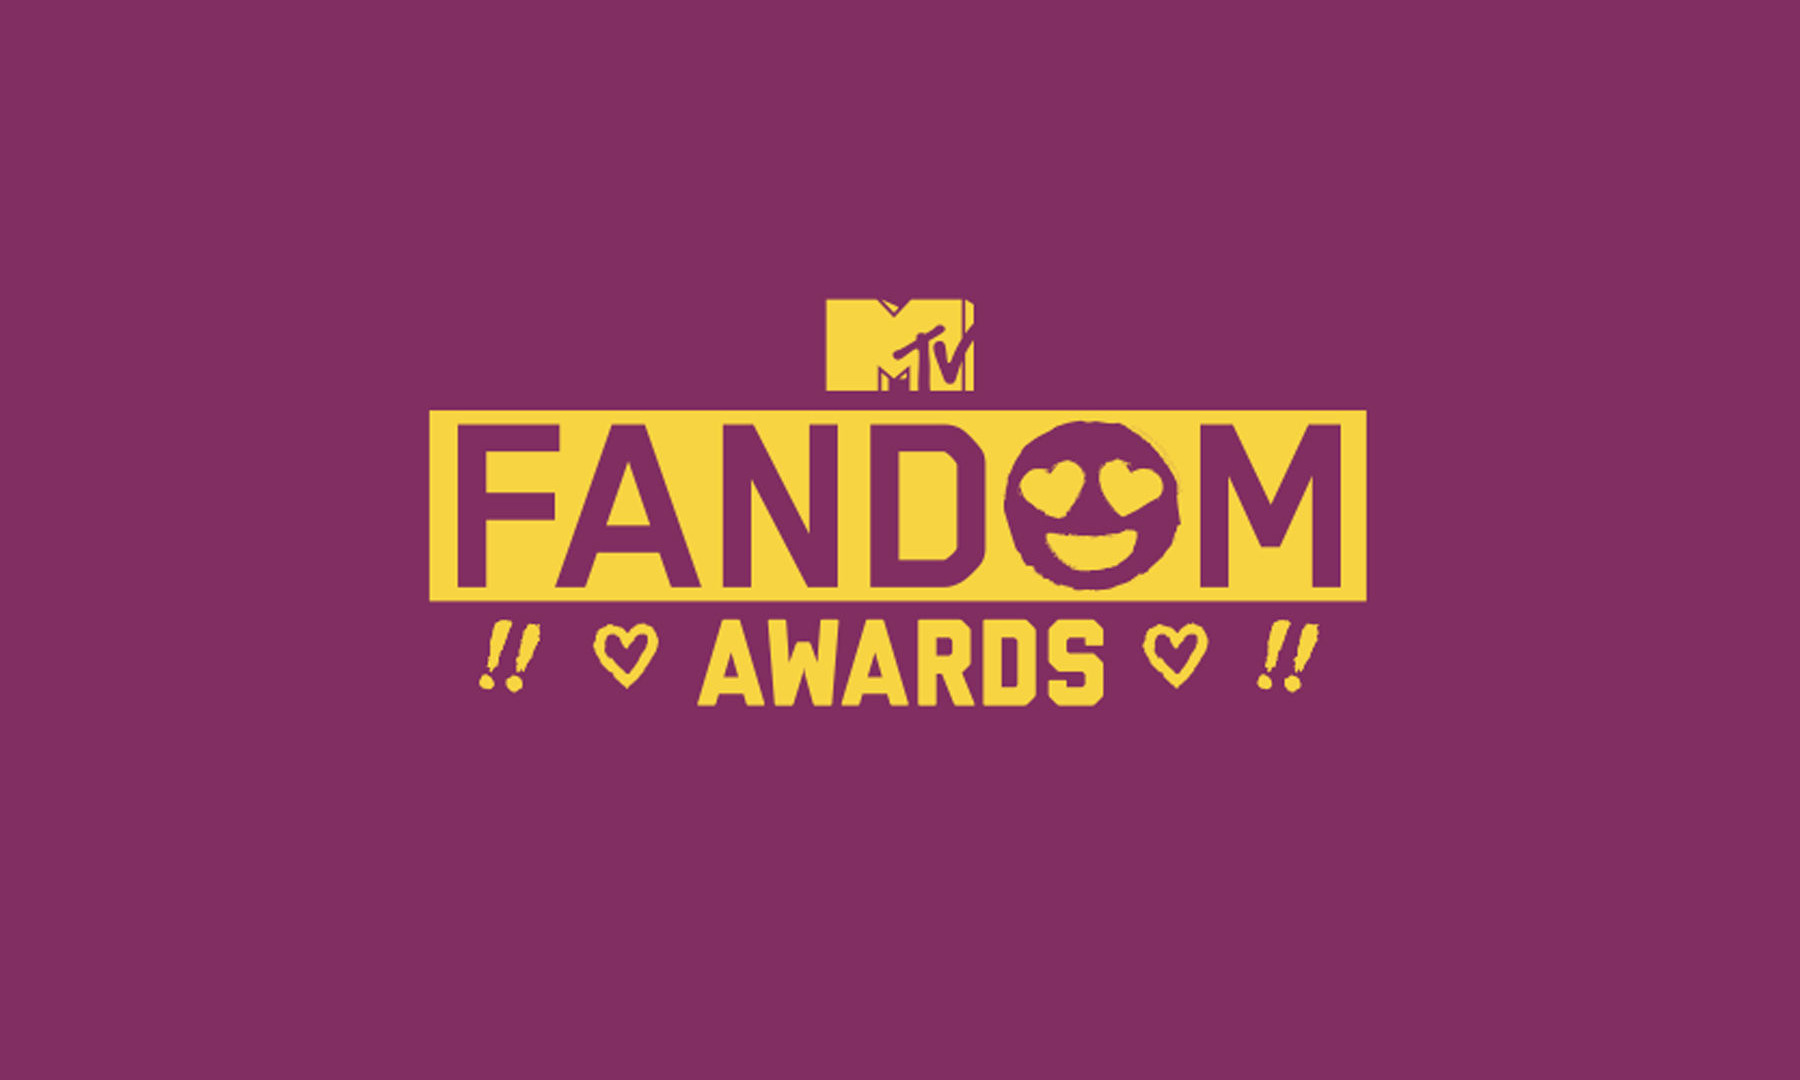 Show MTV Fandom Awards